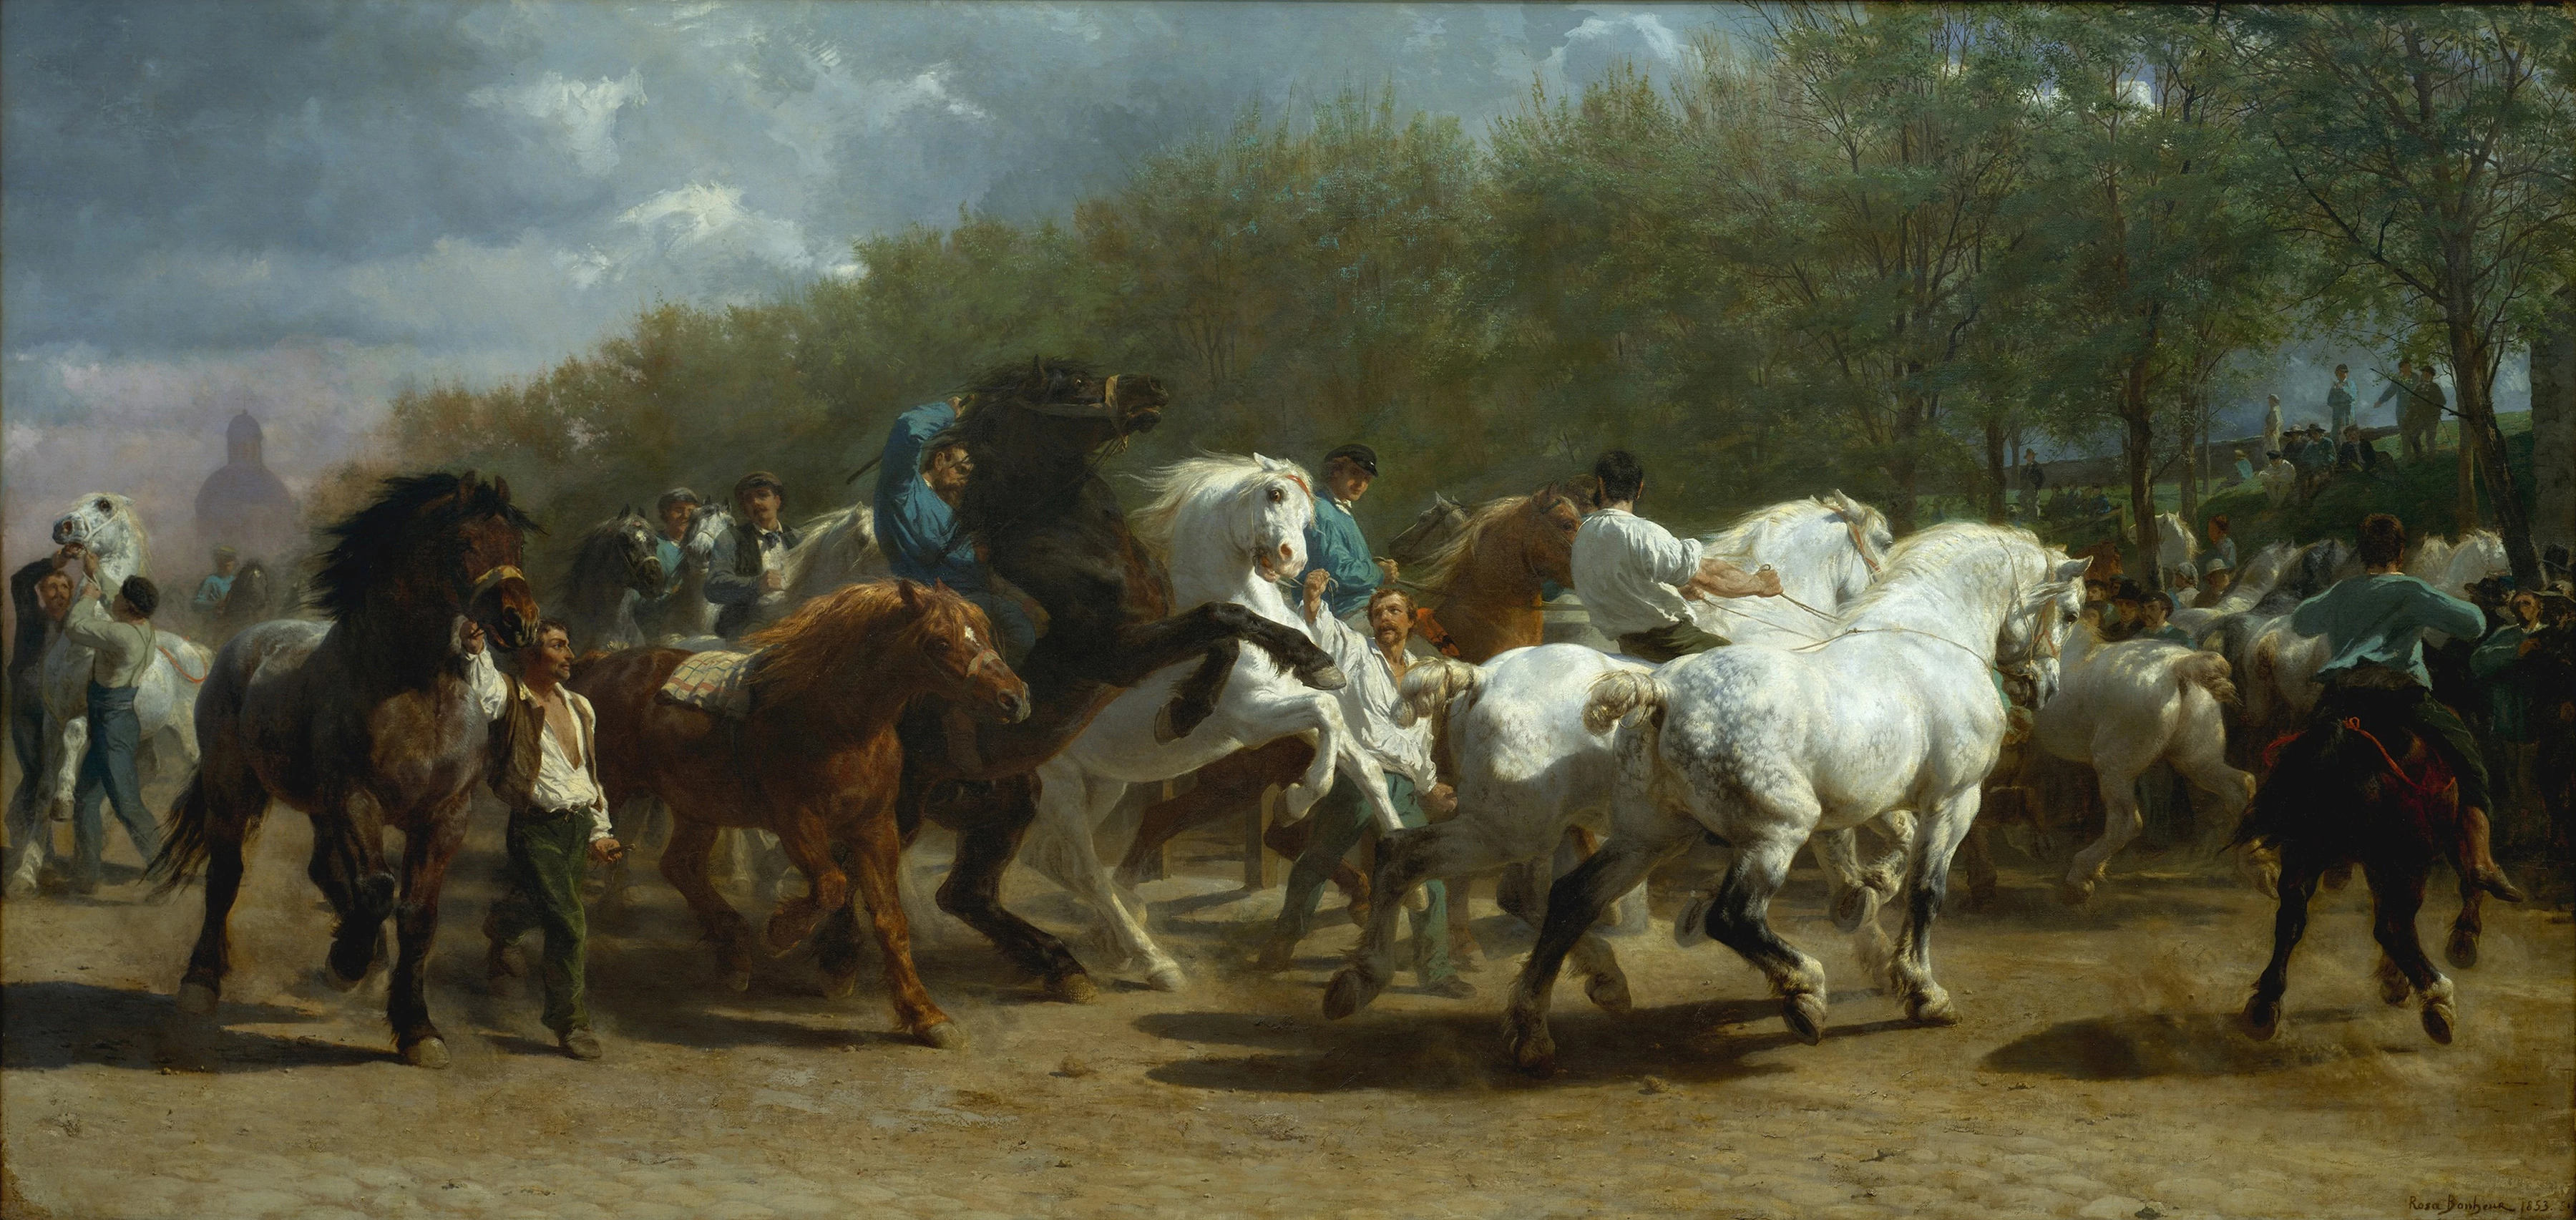 The Horse Fair, Rosa Bonheur